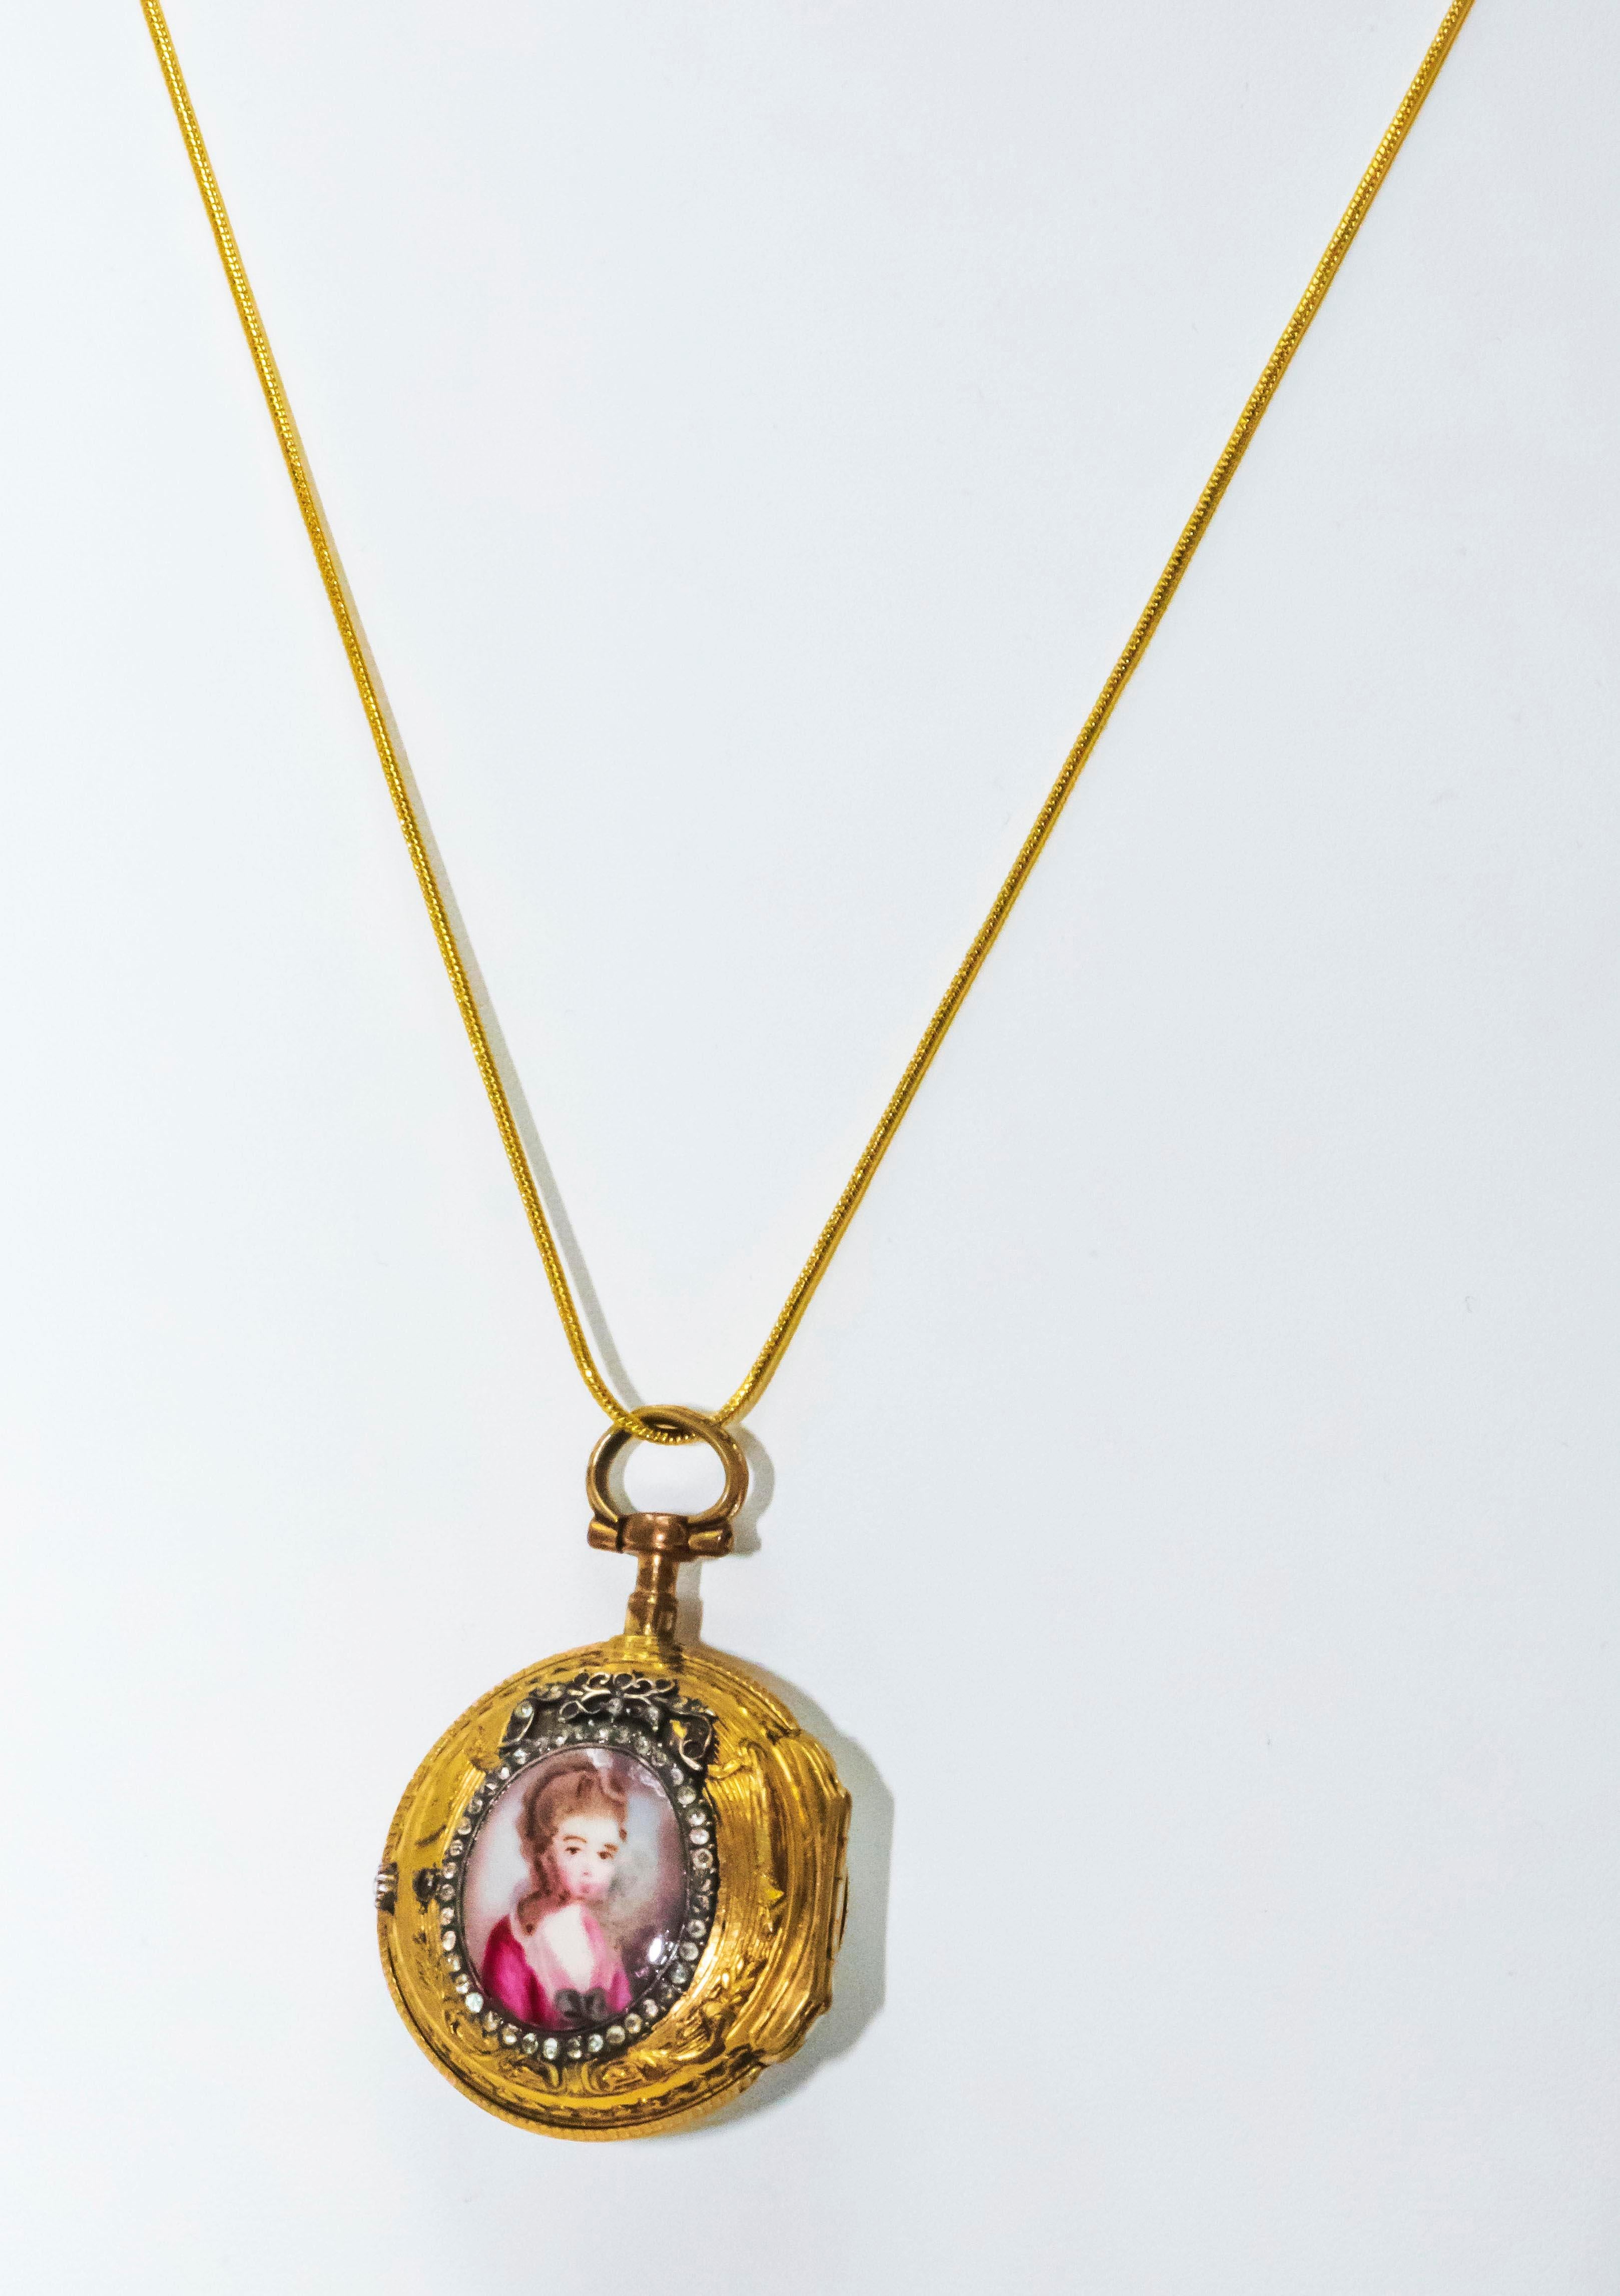 1700s French Leroy 18kt Gold, Diamond, & Enamel Royal Lady Motif Pendant Watch 5